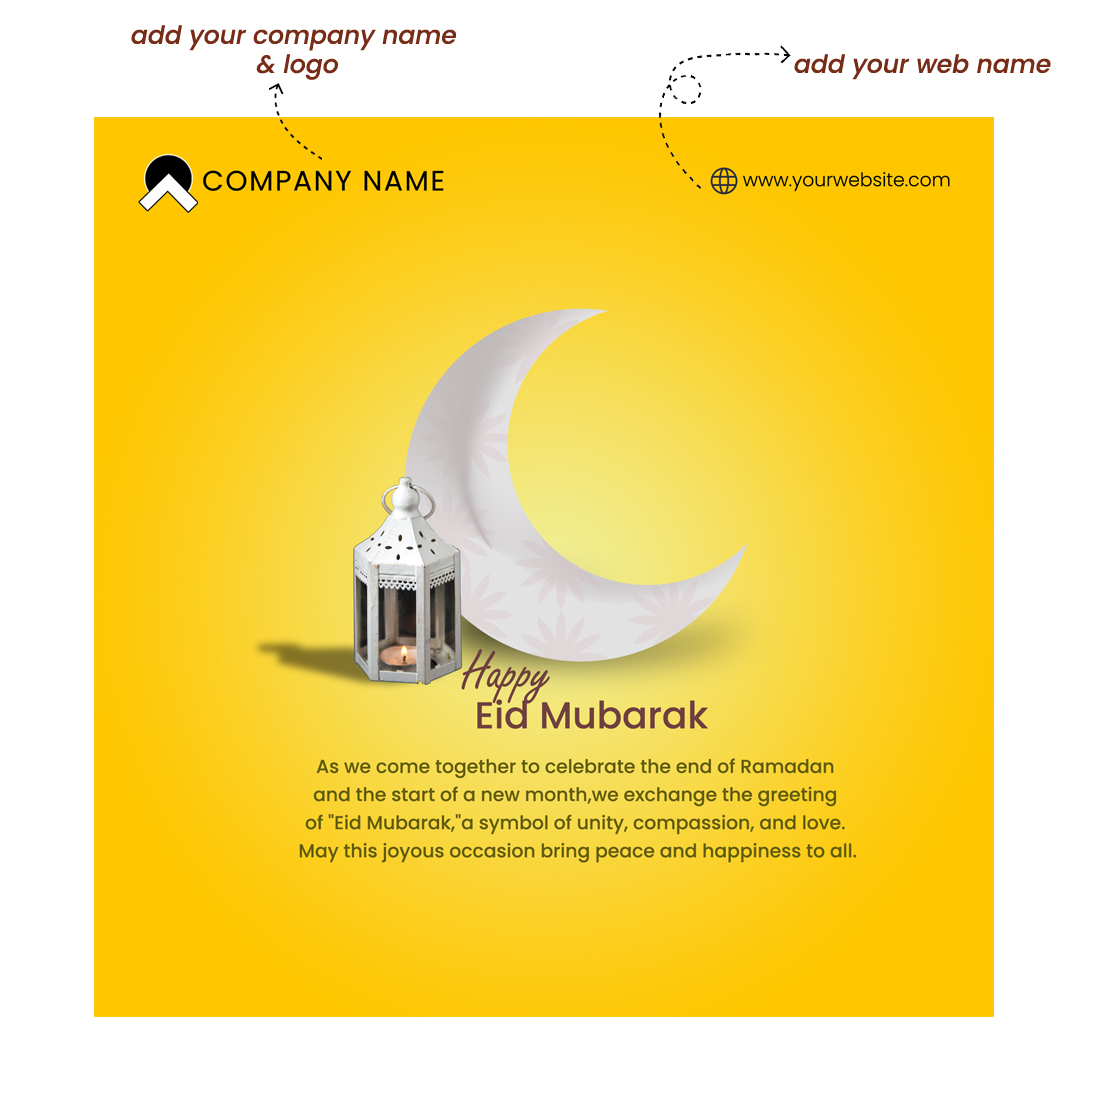 Eid Mubarak Tamplate preview image.